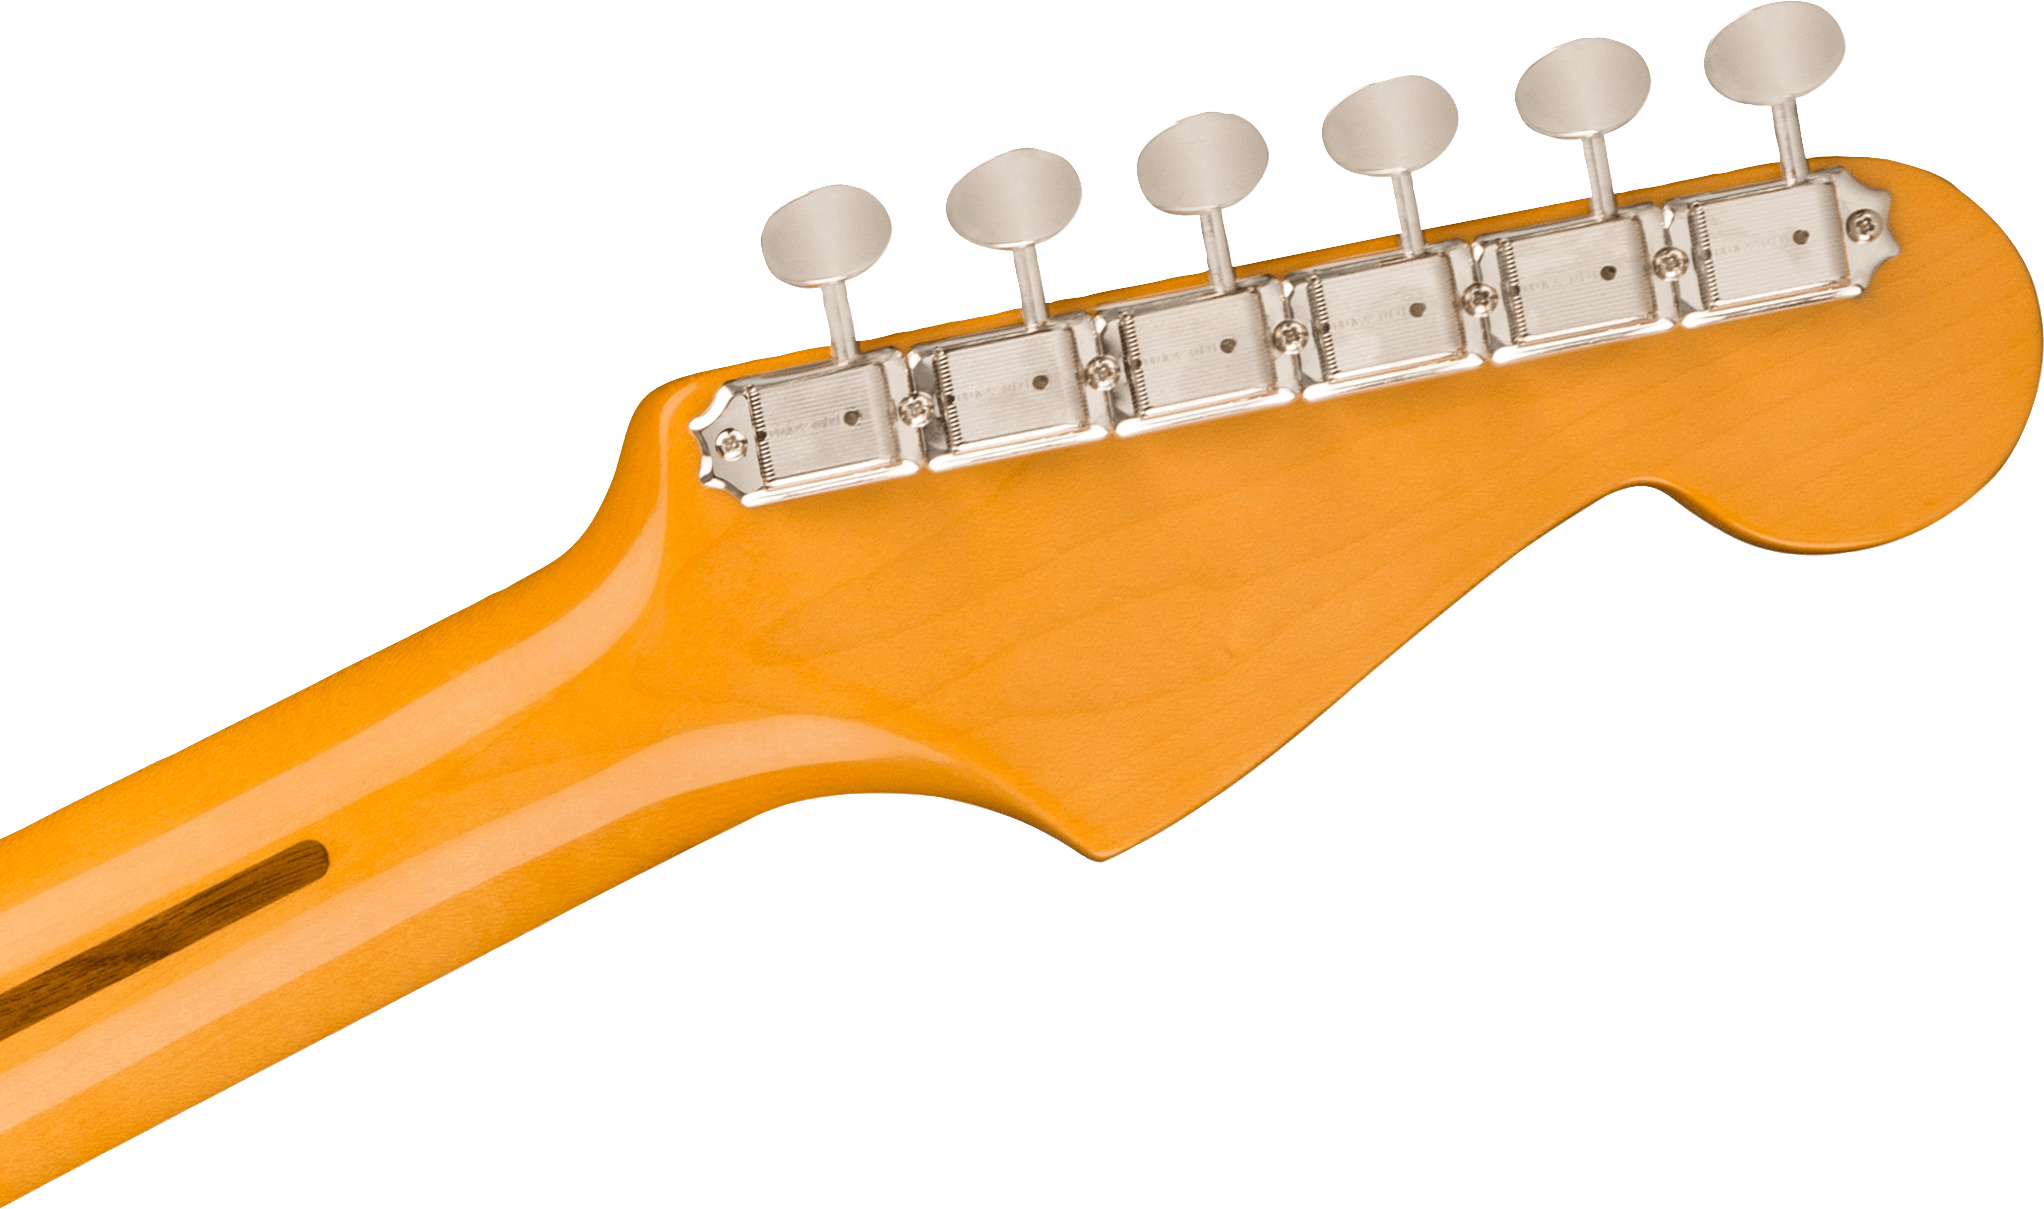 Fender Strat 1957 American Vintage Ii Lh Gaucher Usa 3s Trem Mn - Vintage Blonde - Guitarra electrica para zurdos - Variation 3